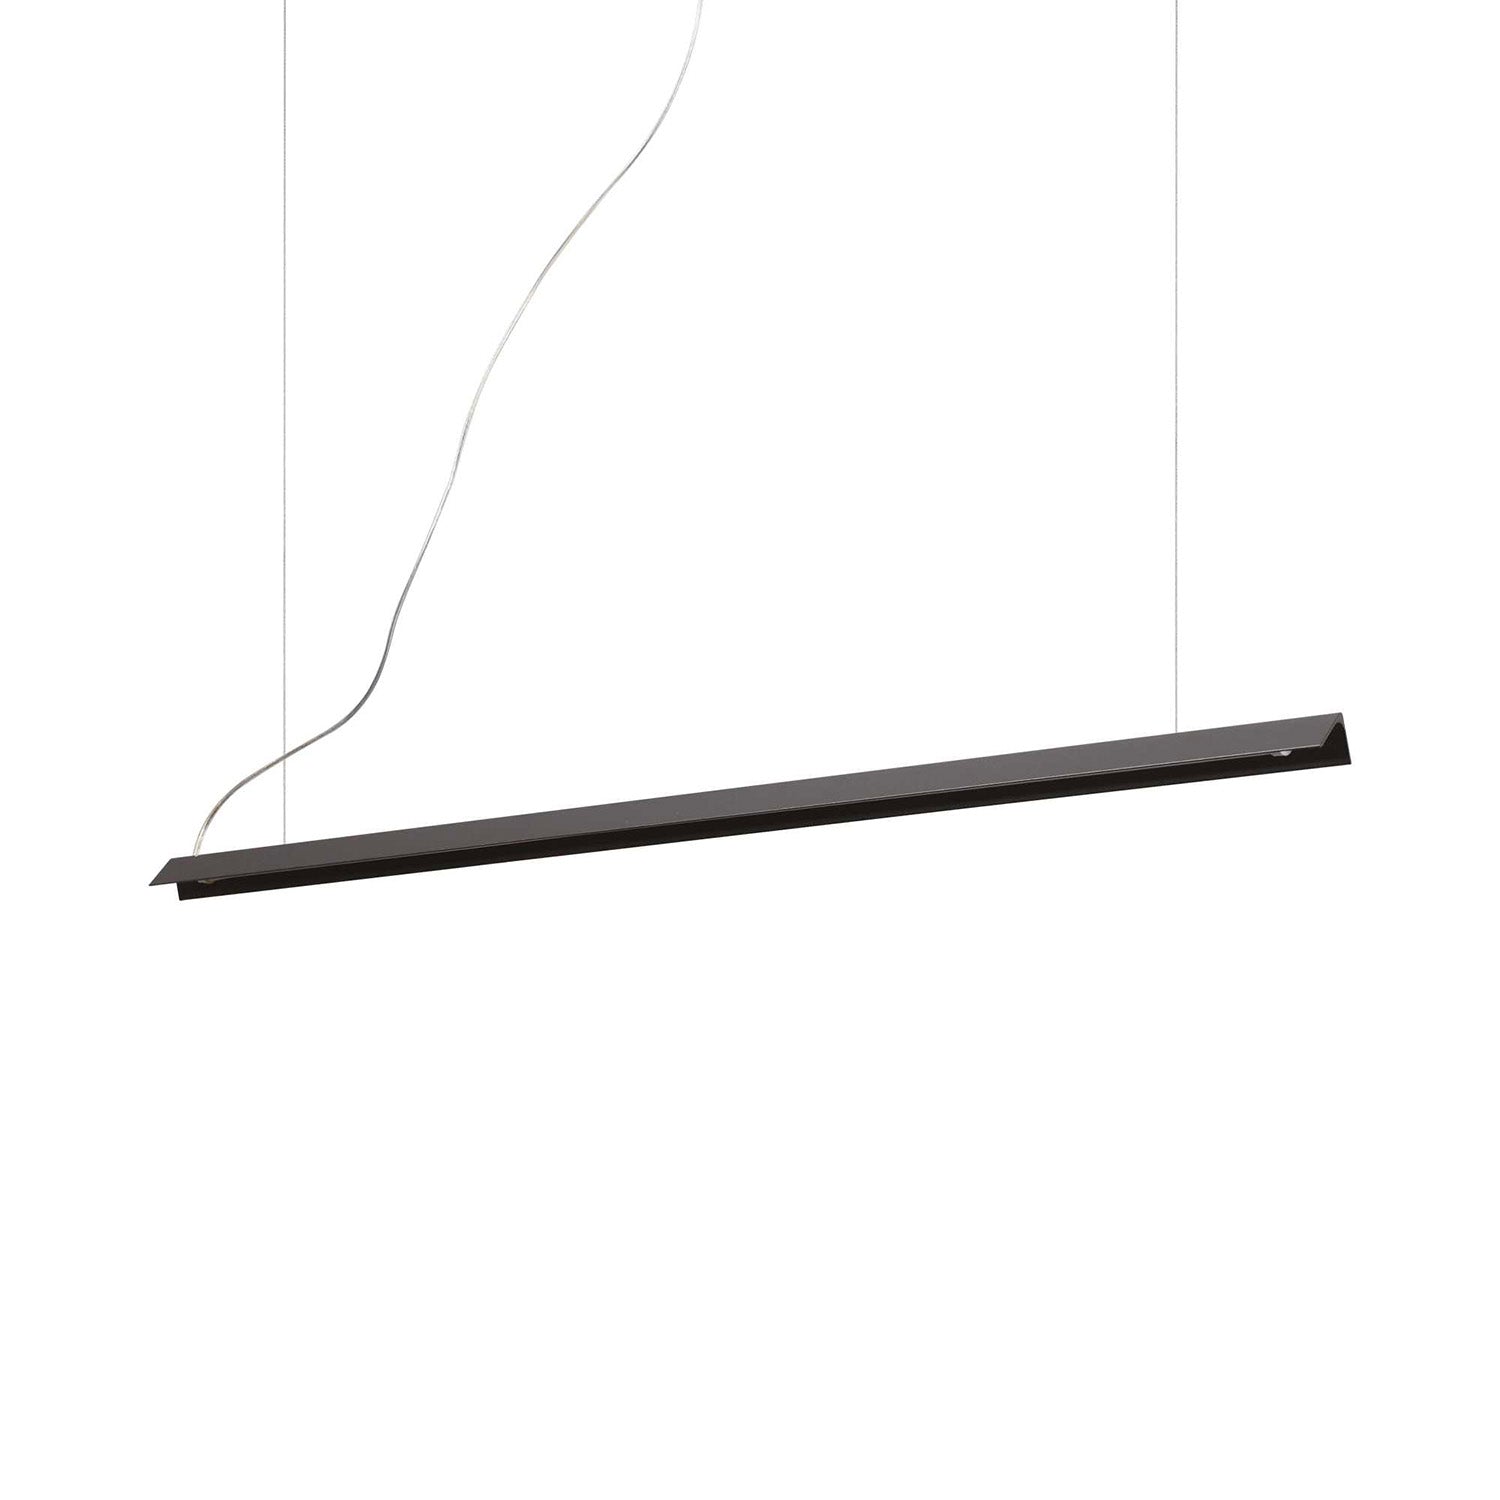 V-LINE – Integrierte lineare LED-Pendelleuchte in Schwarz oder Weiß